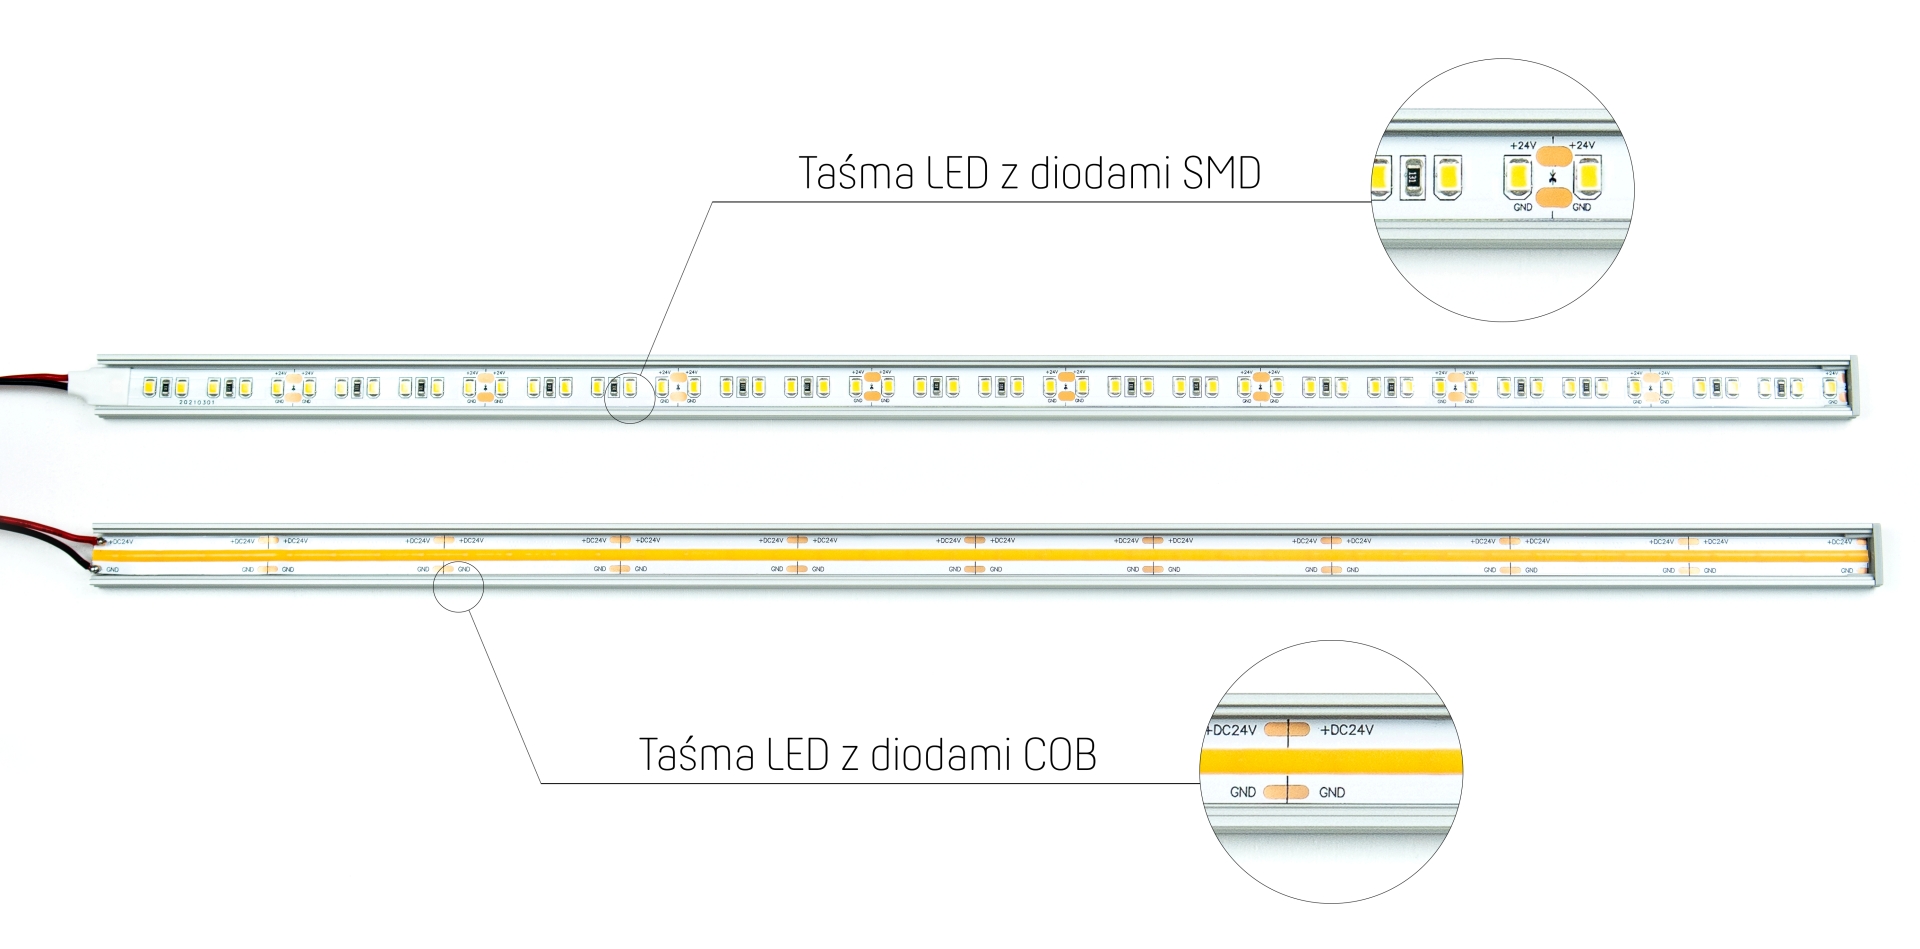 Porównanie taśmy LED z diodami SMD z taśmą LED z diodami COB